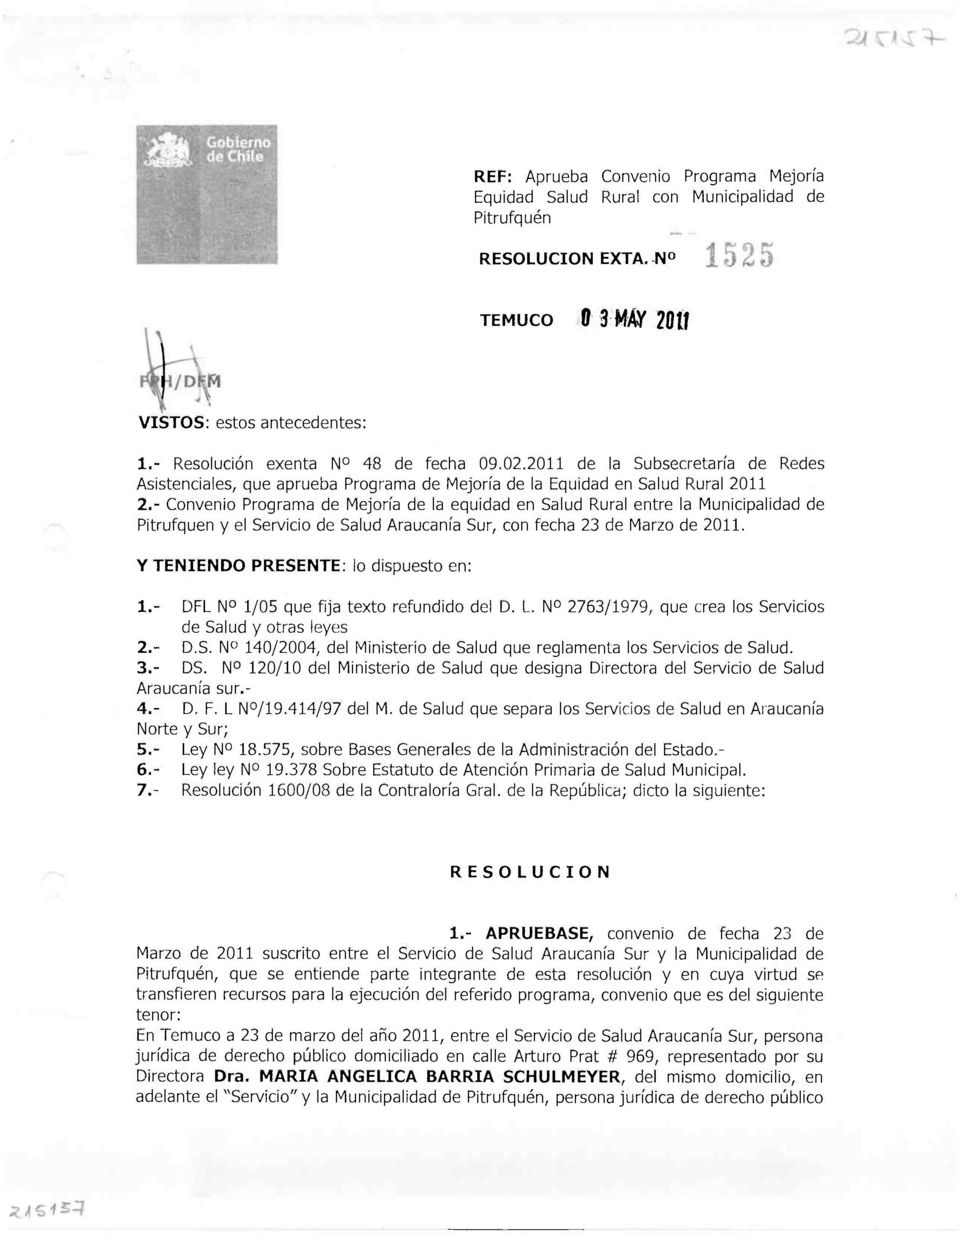 " Convenio Programa de Mejoría de la equidad en Salud Rural entre la Municipalidad de Pitrufquén y el Servicio de Salud Araucanía Sur, con fecha 23 de Marzo de 2011.